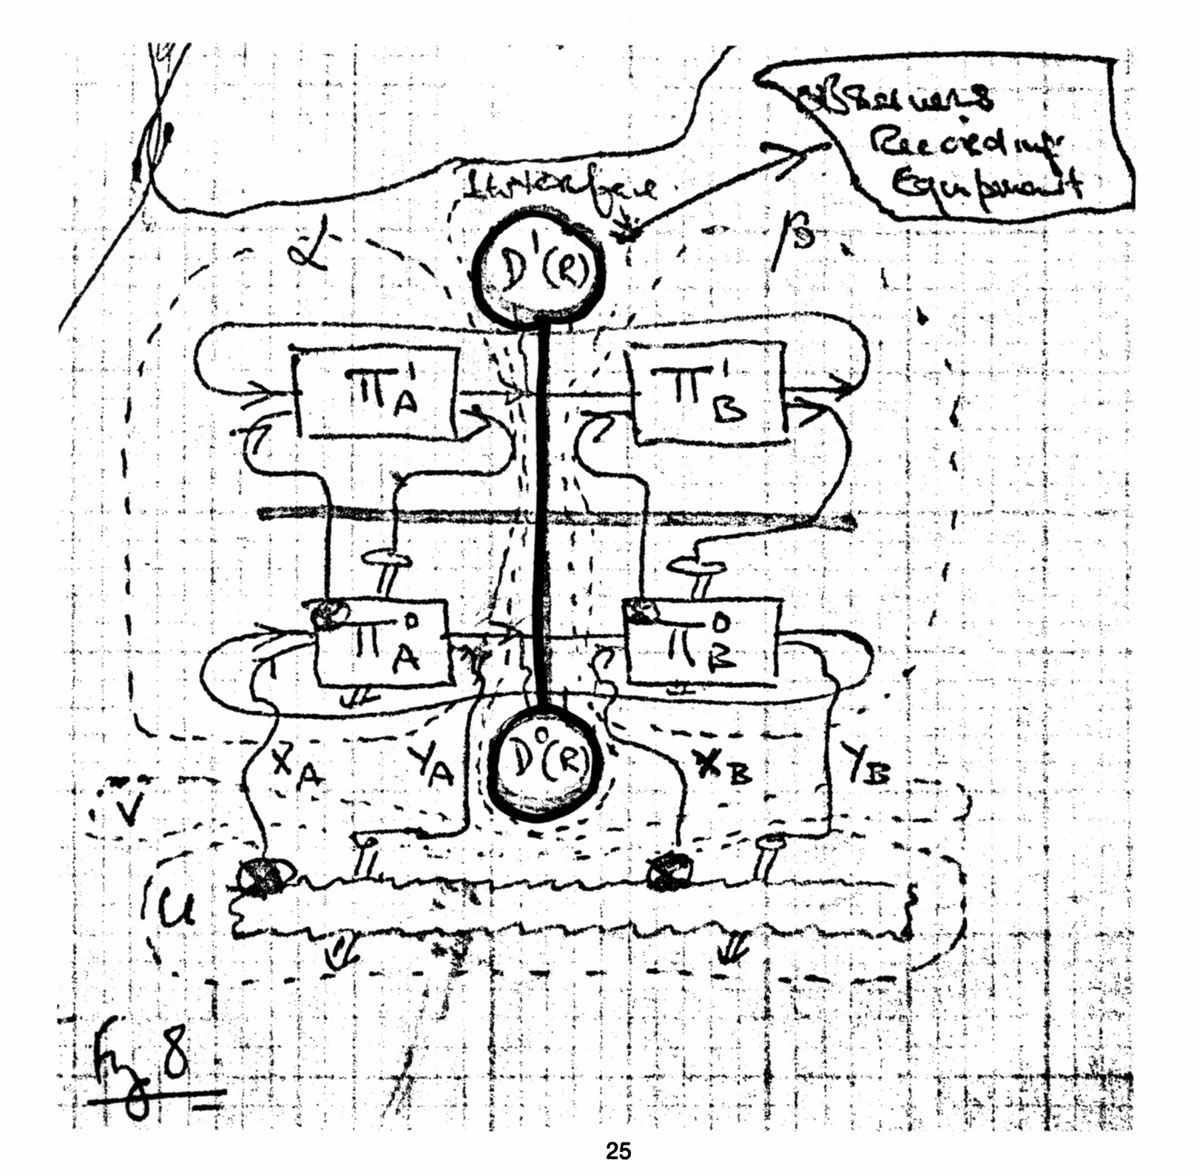 Cybernetic diagram by Gordon Pask